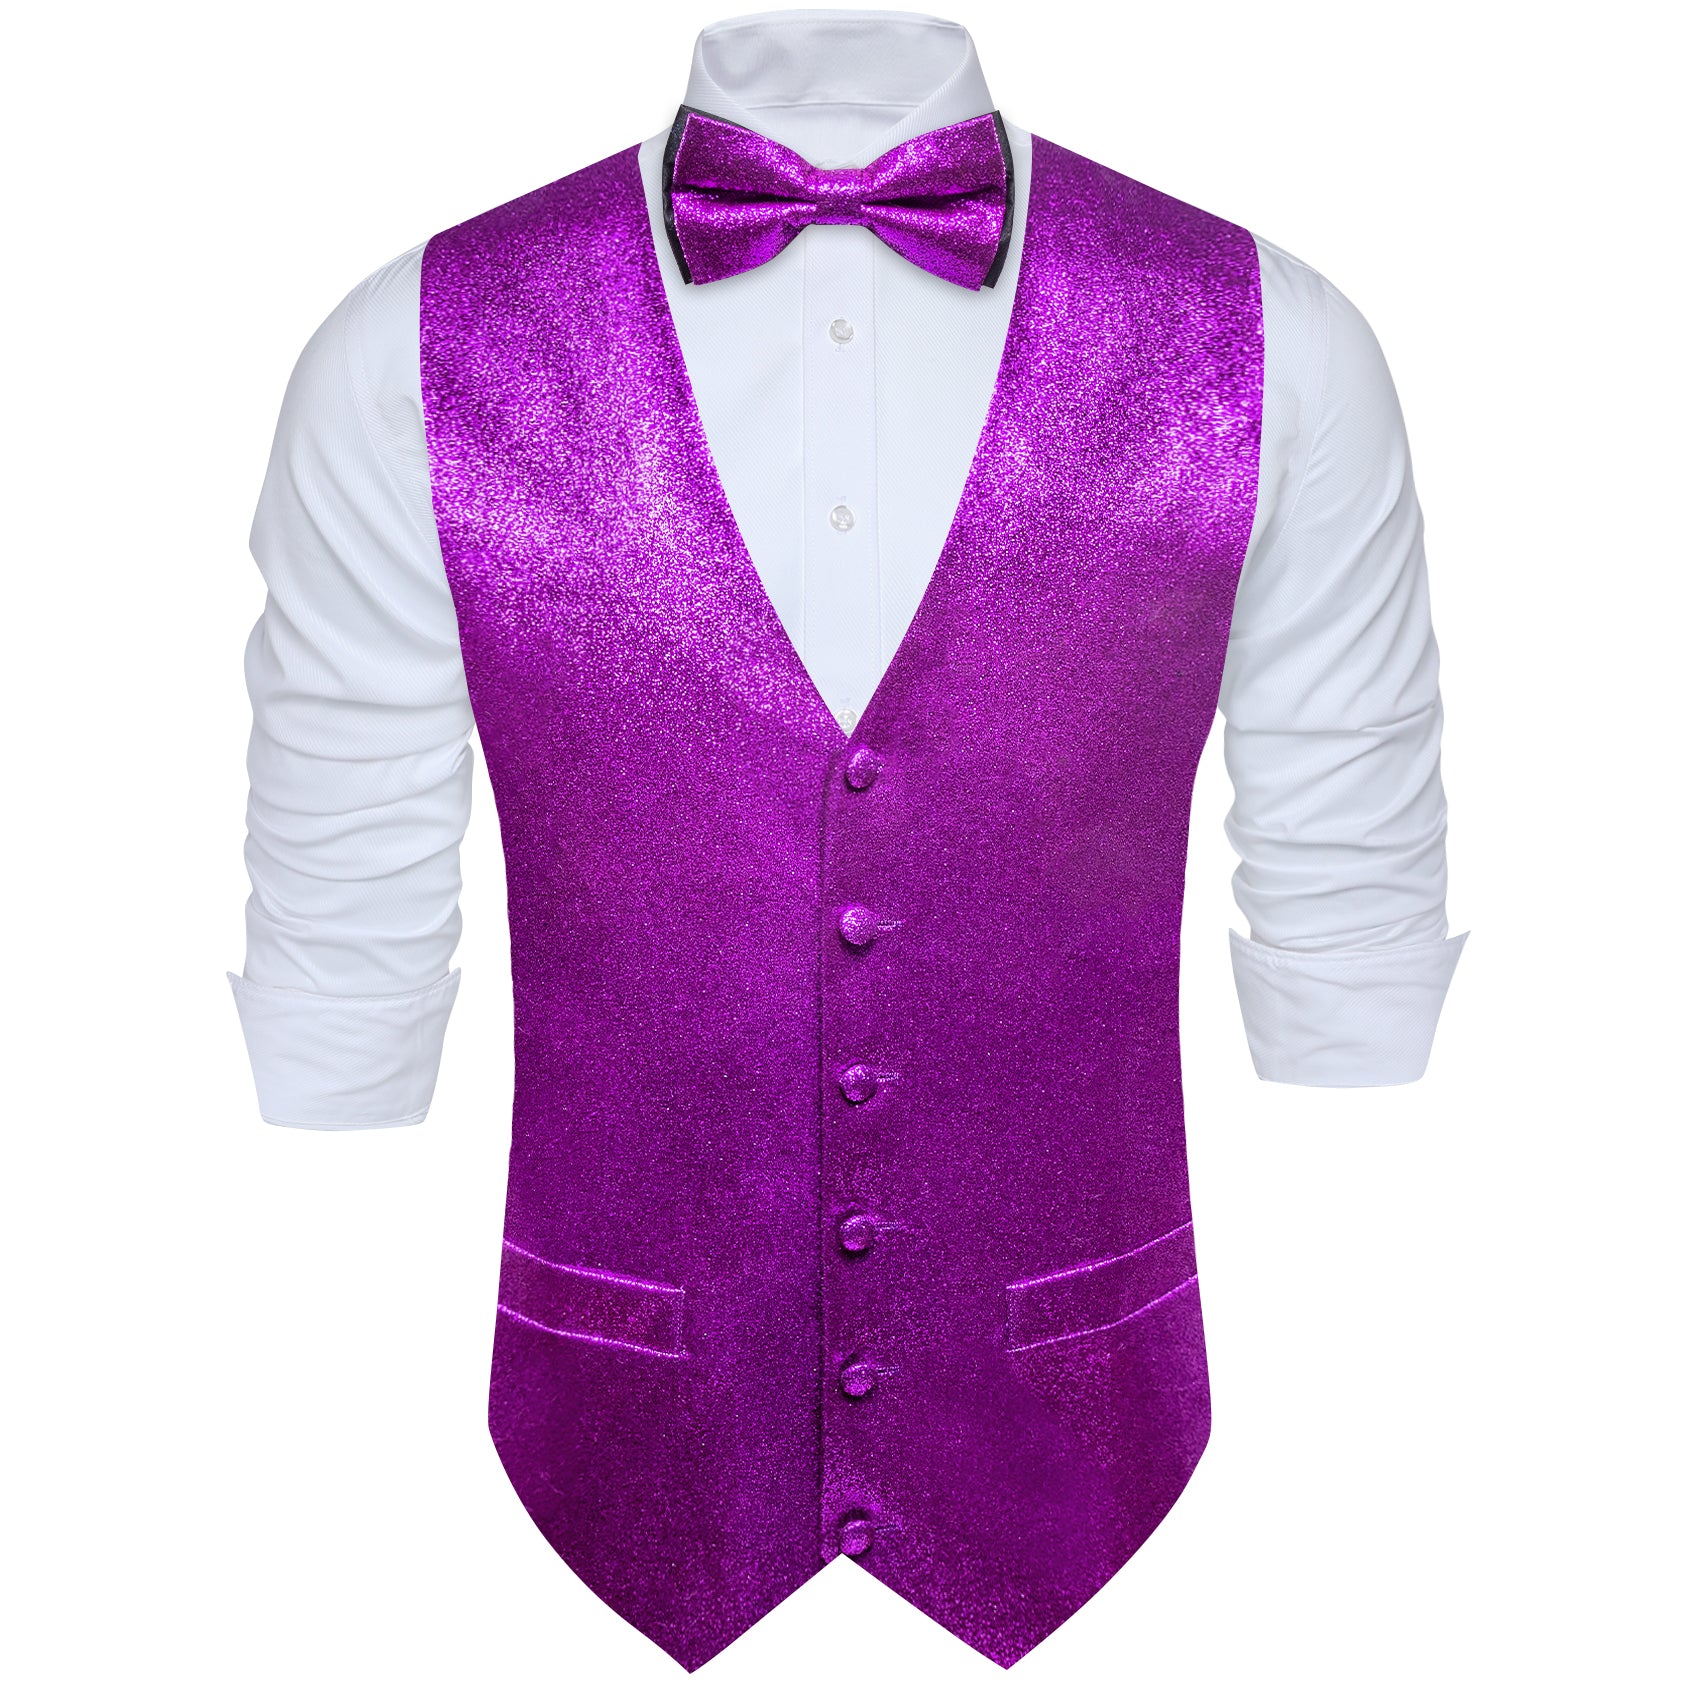 Barry.wang Men's Vest Shining Violet Purple Bowtie V-Neck Vest Set